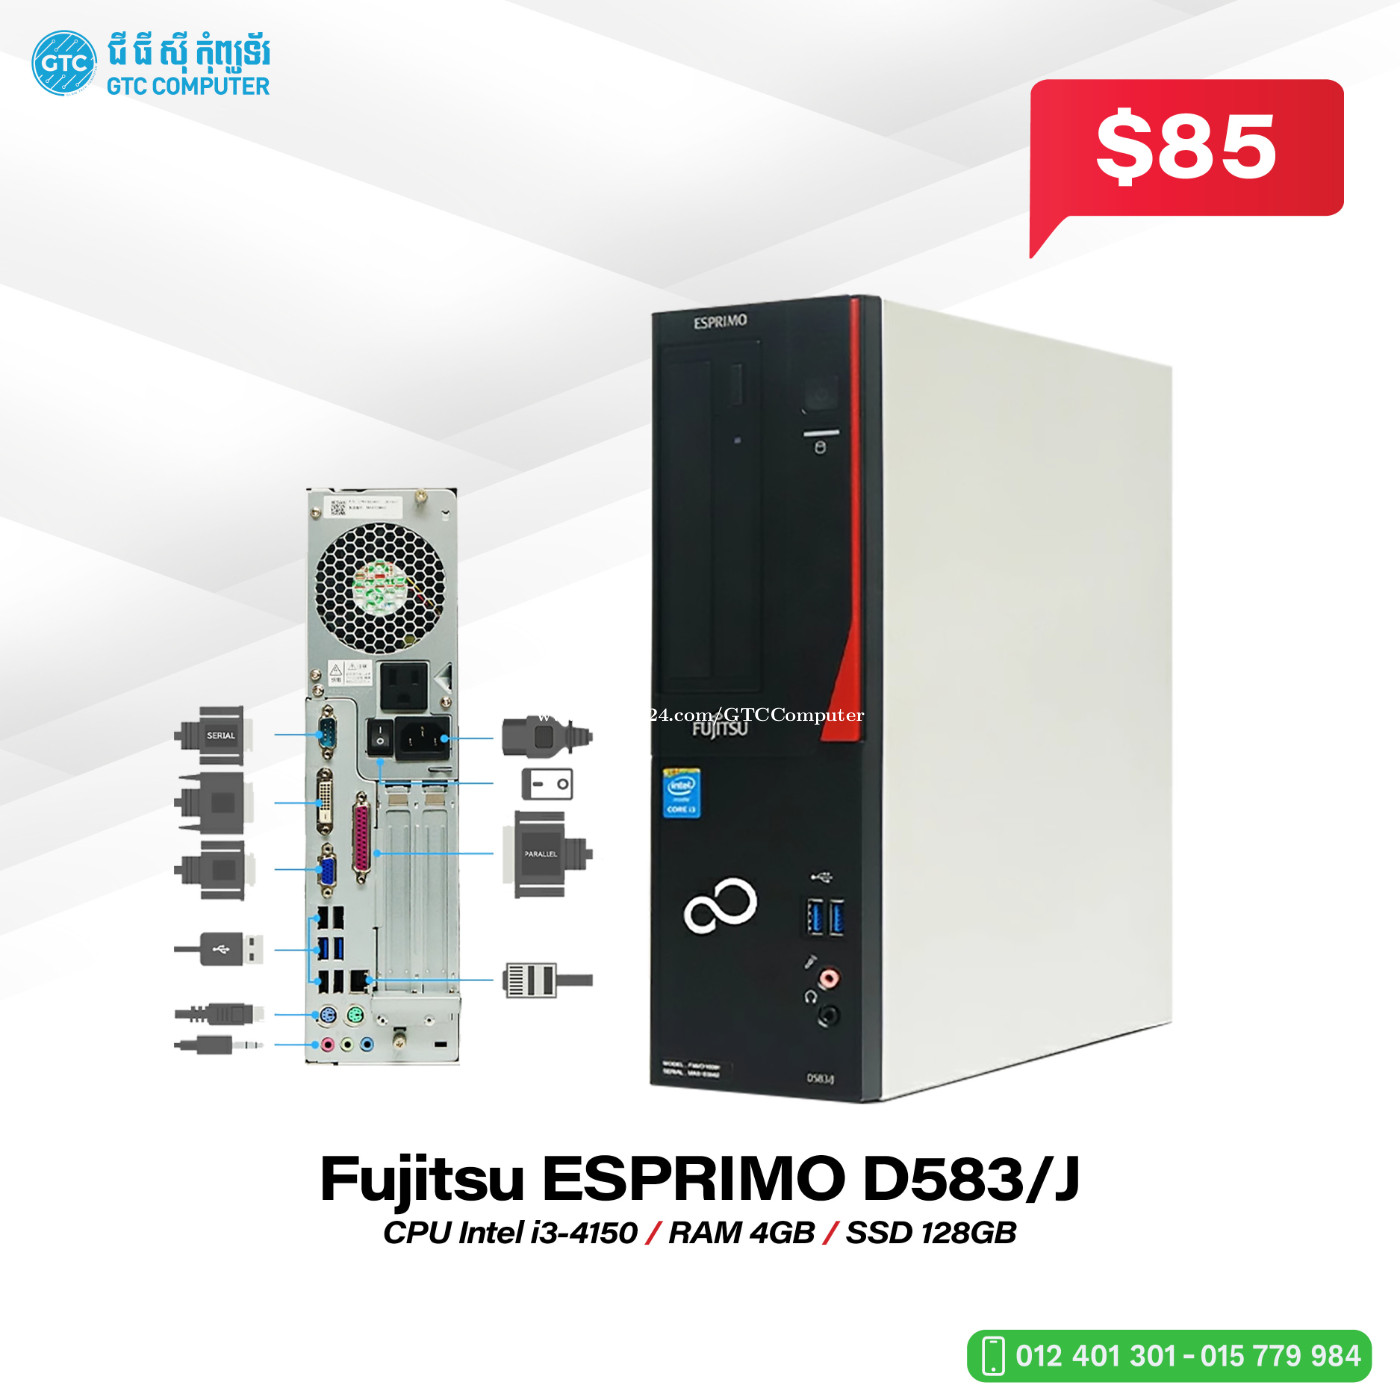 Fujitsu ESPRIMO D583/J